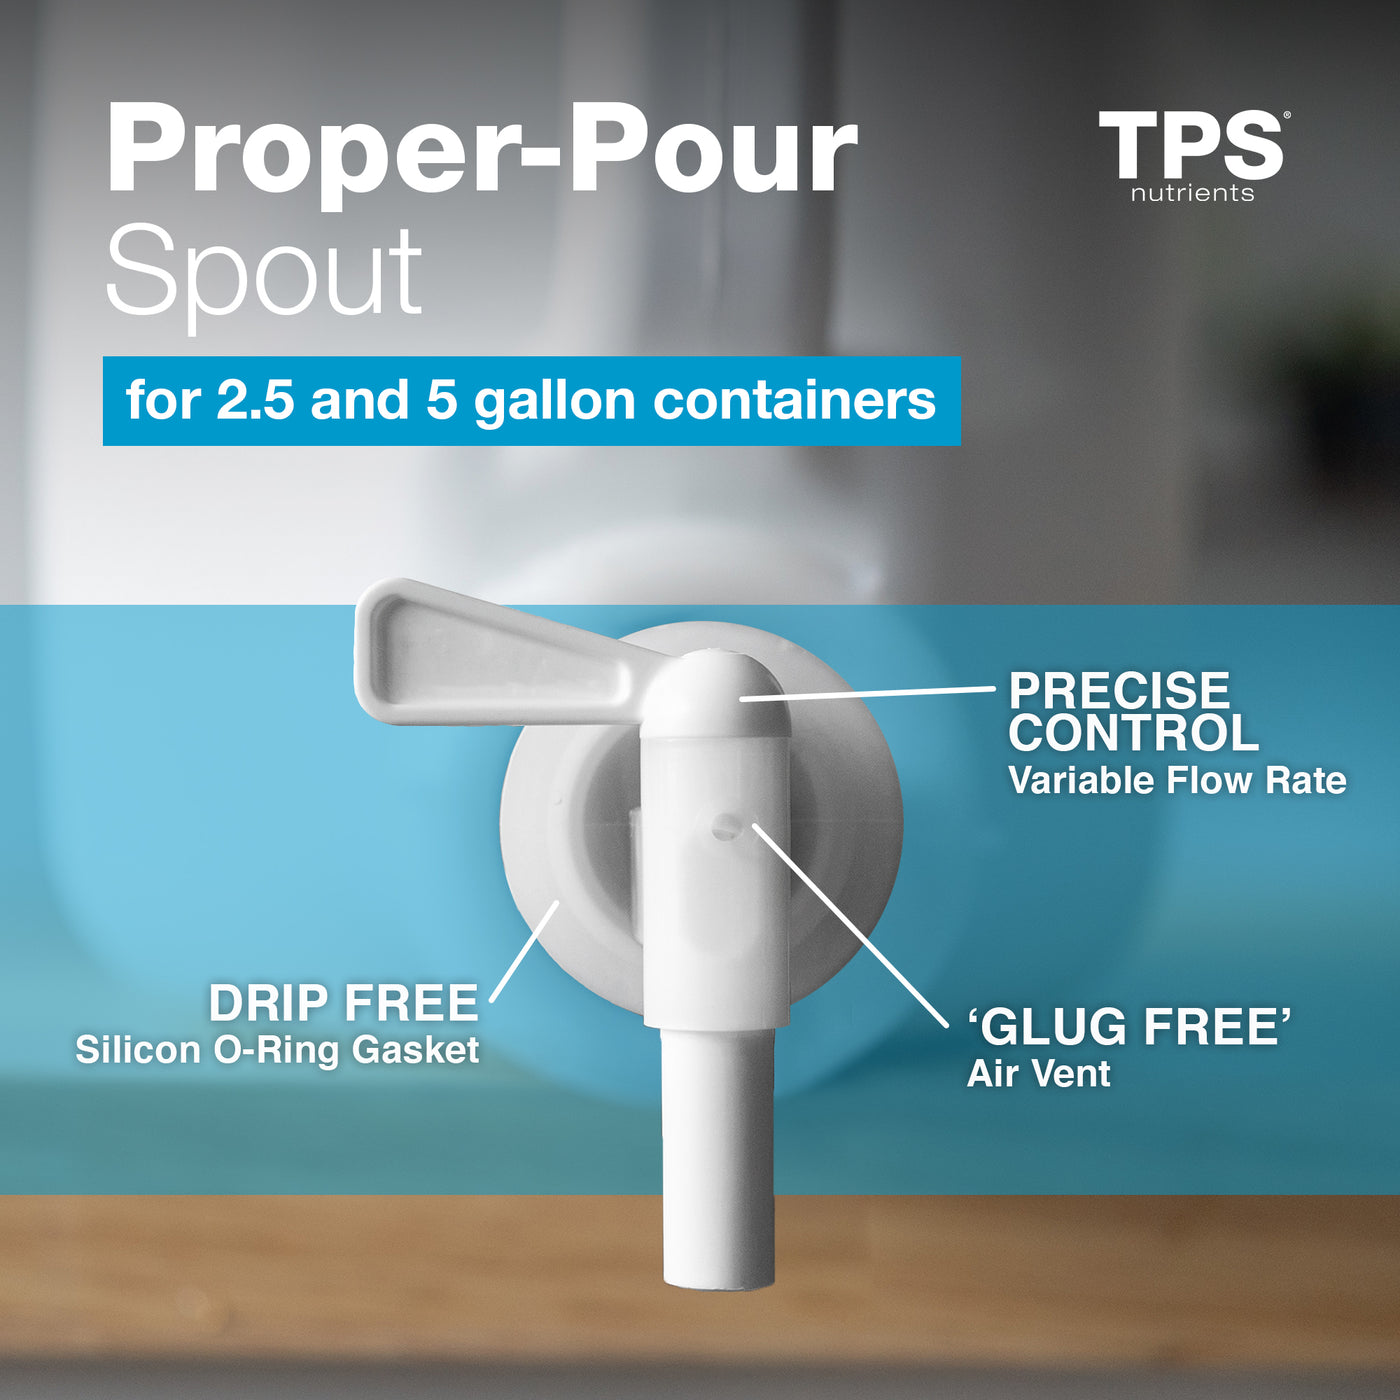 TPS Proper-Pour Spout